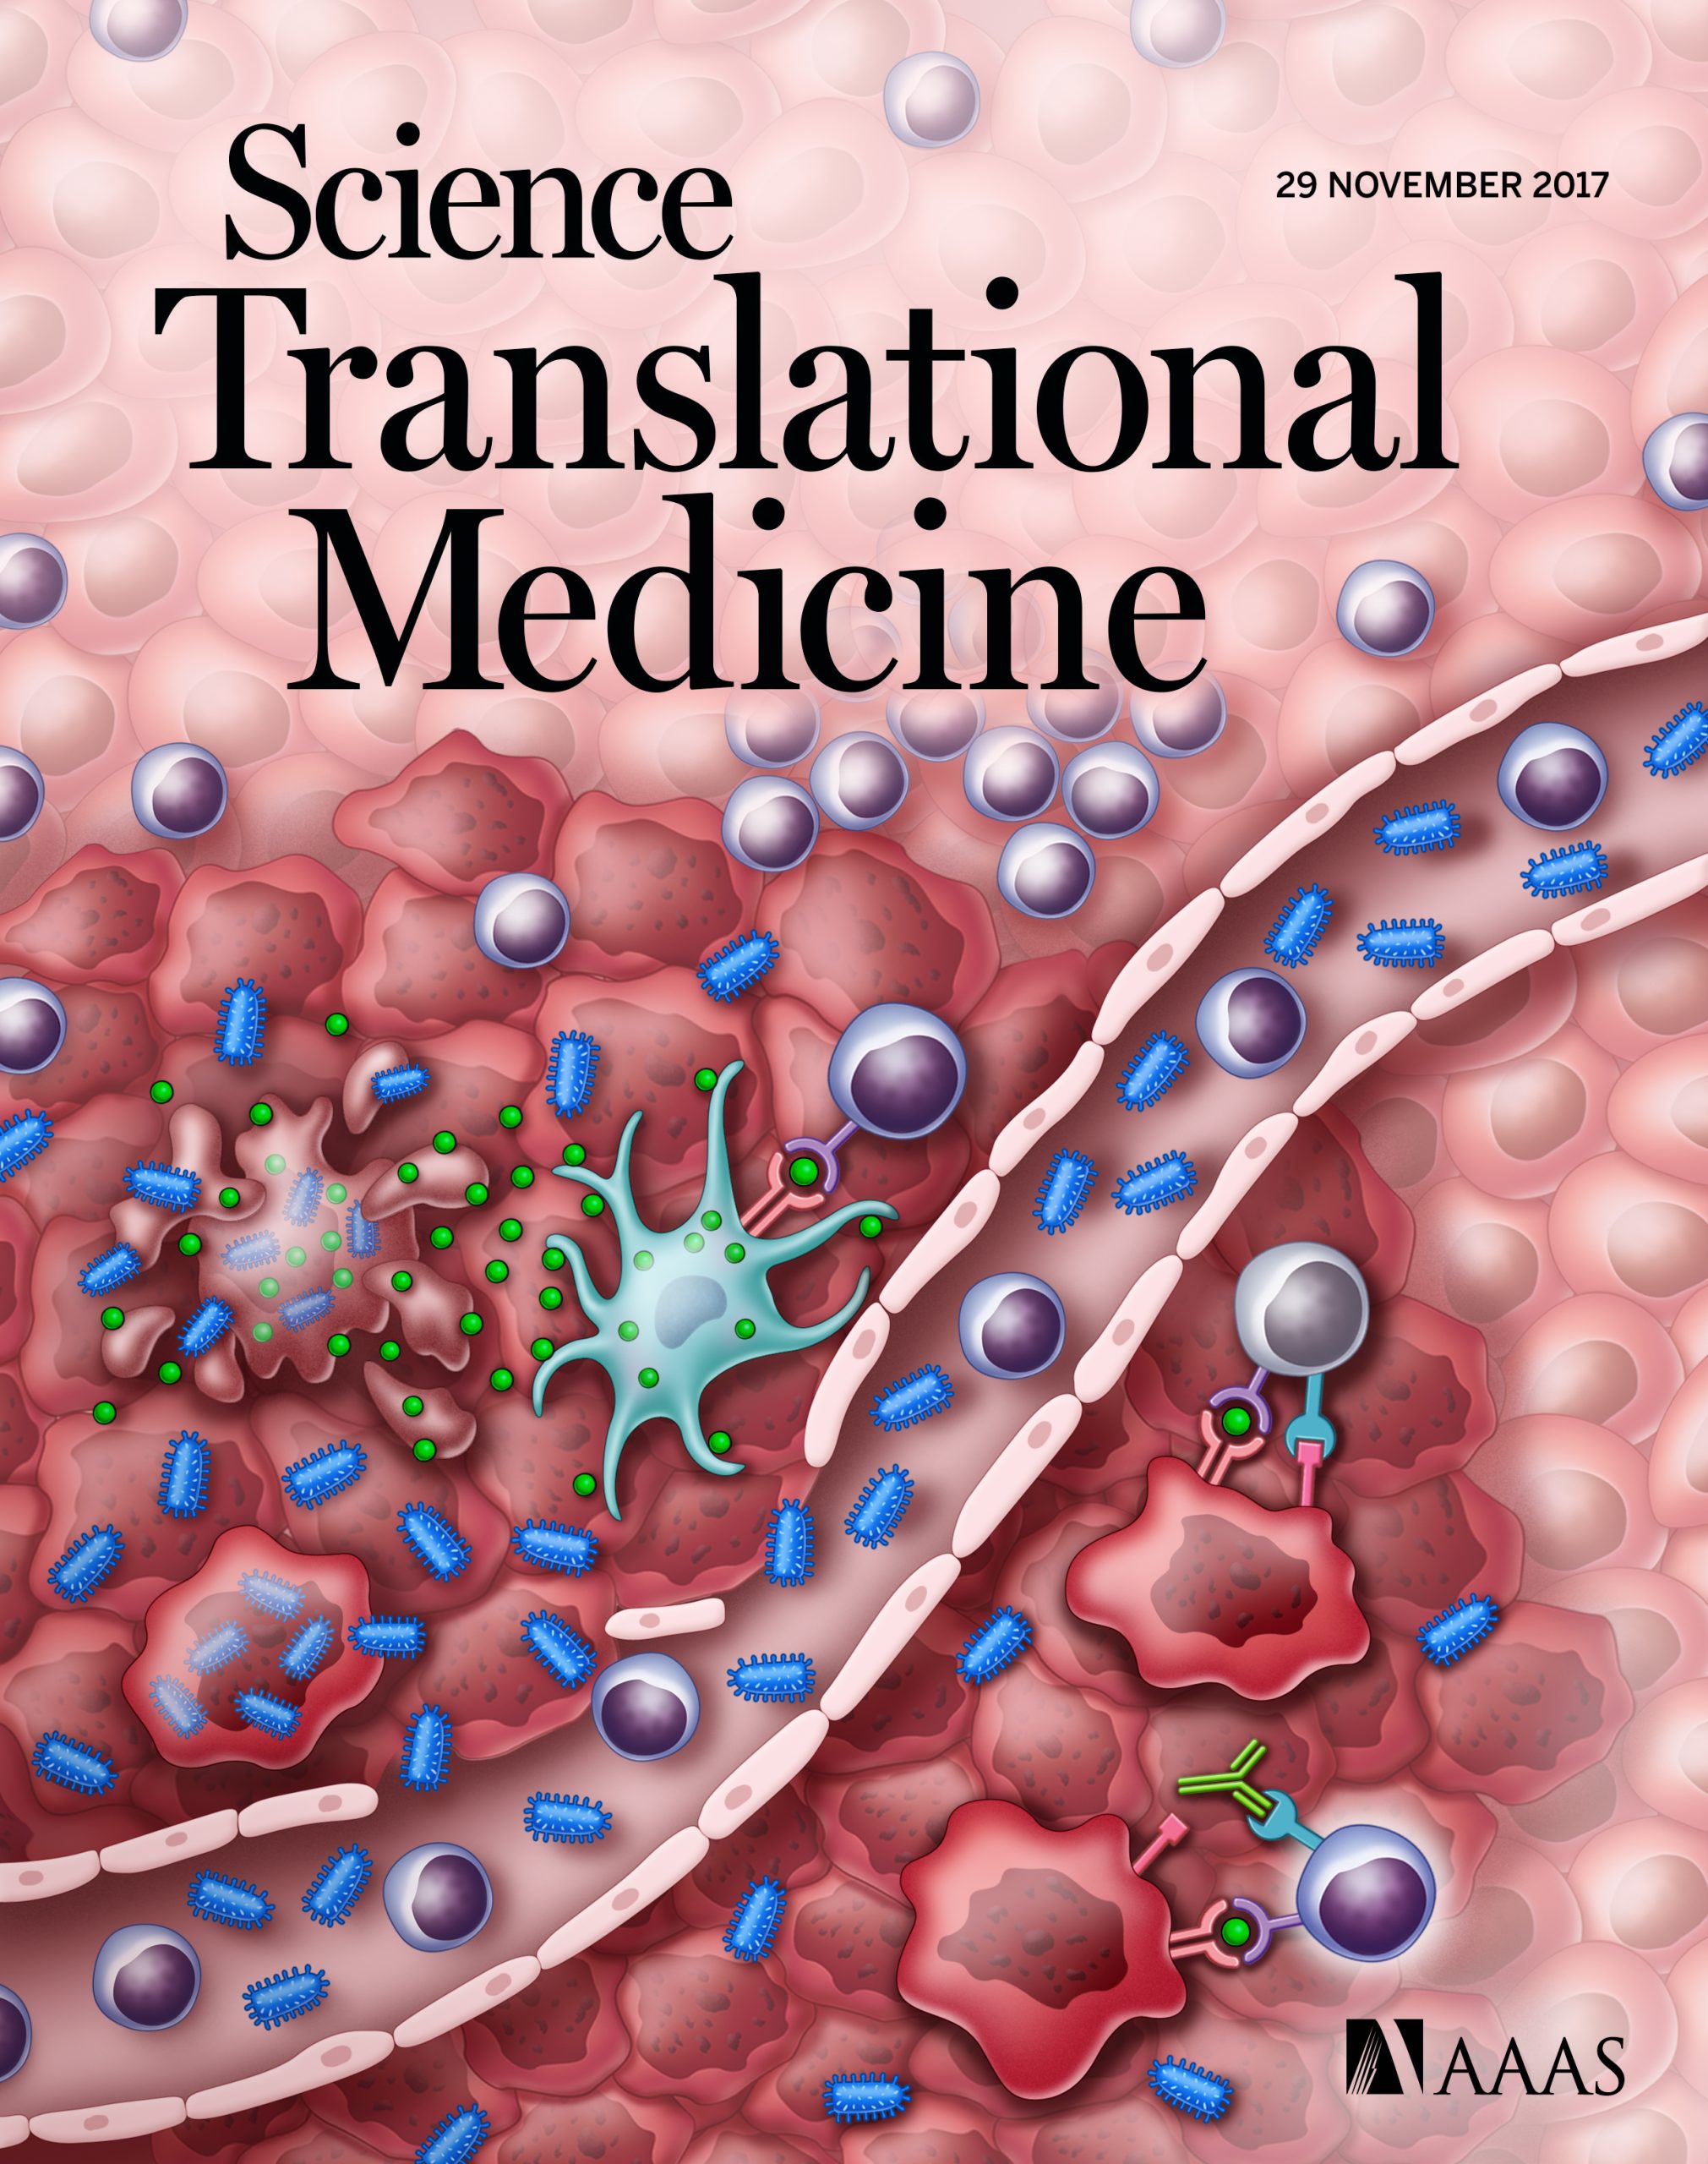 Science Translational Medicine journal cover